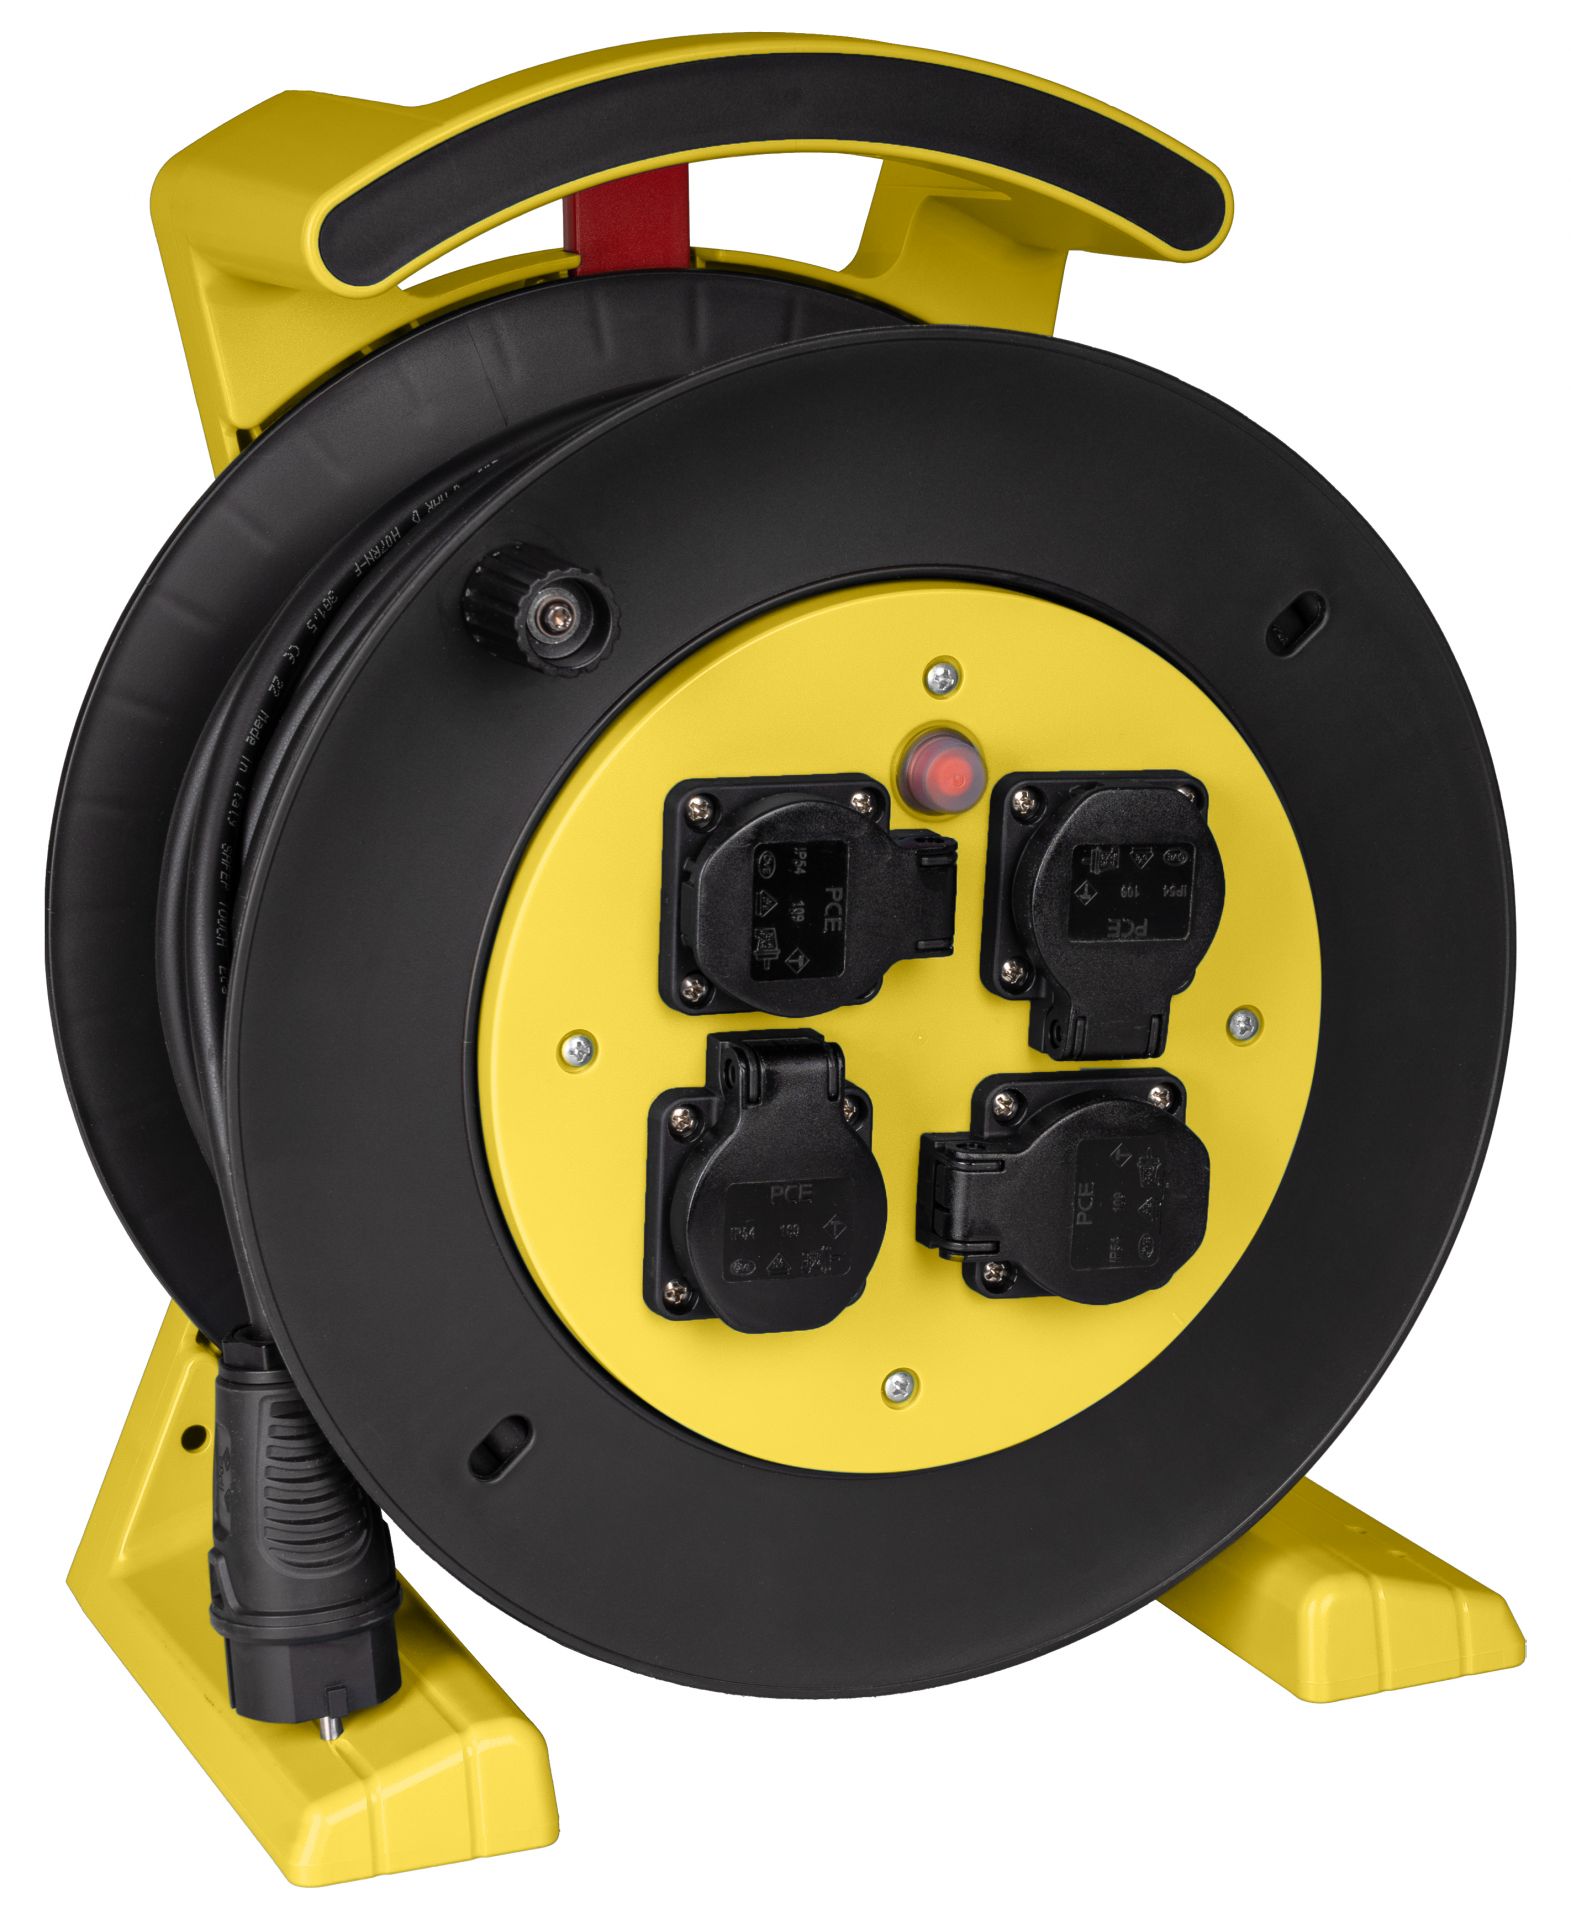 Kabeltrommel gelb-schwarz, 4 x Schutzkontakt-Steckdose, H07RN-F 3 G 1,5 mm², 40 m JUMBO L 2.0